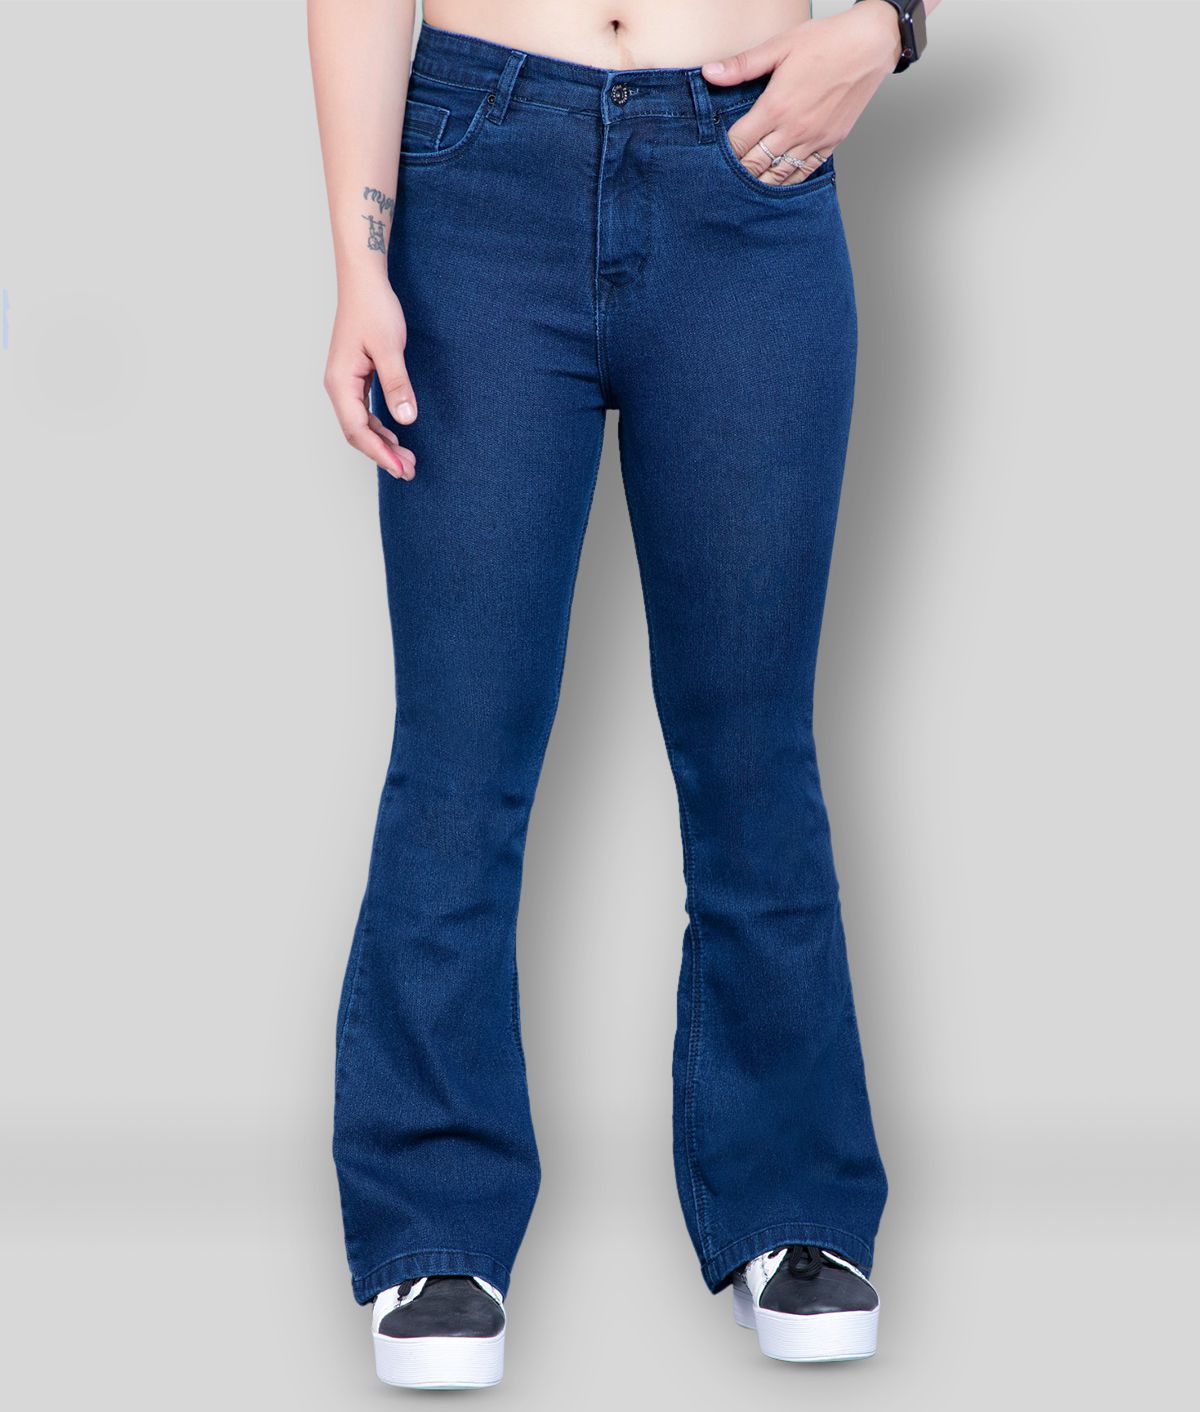 Rea-lize - Blue Cotton Blend Women's Jeans ( Pack of 1 )